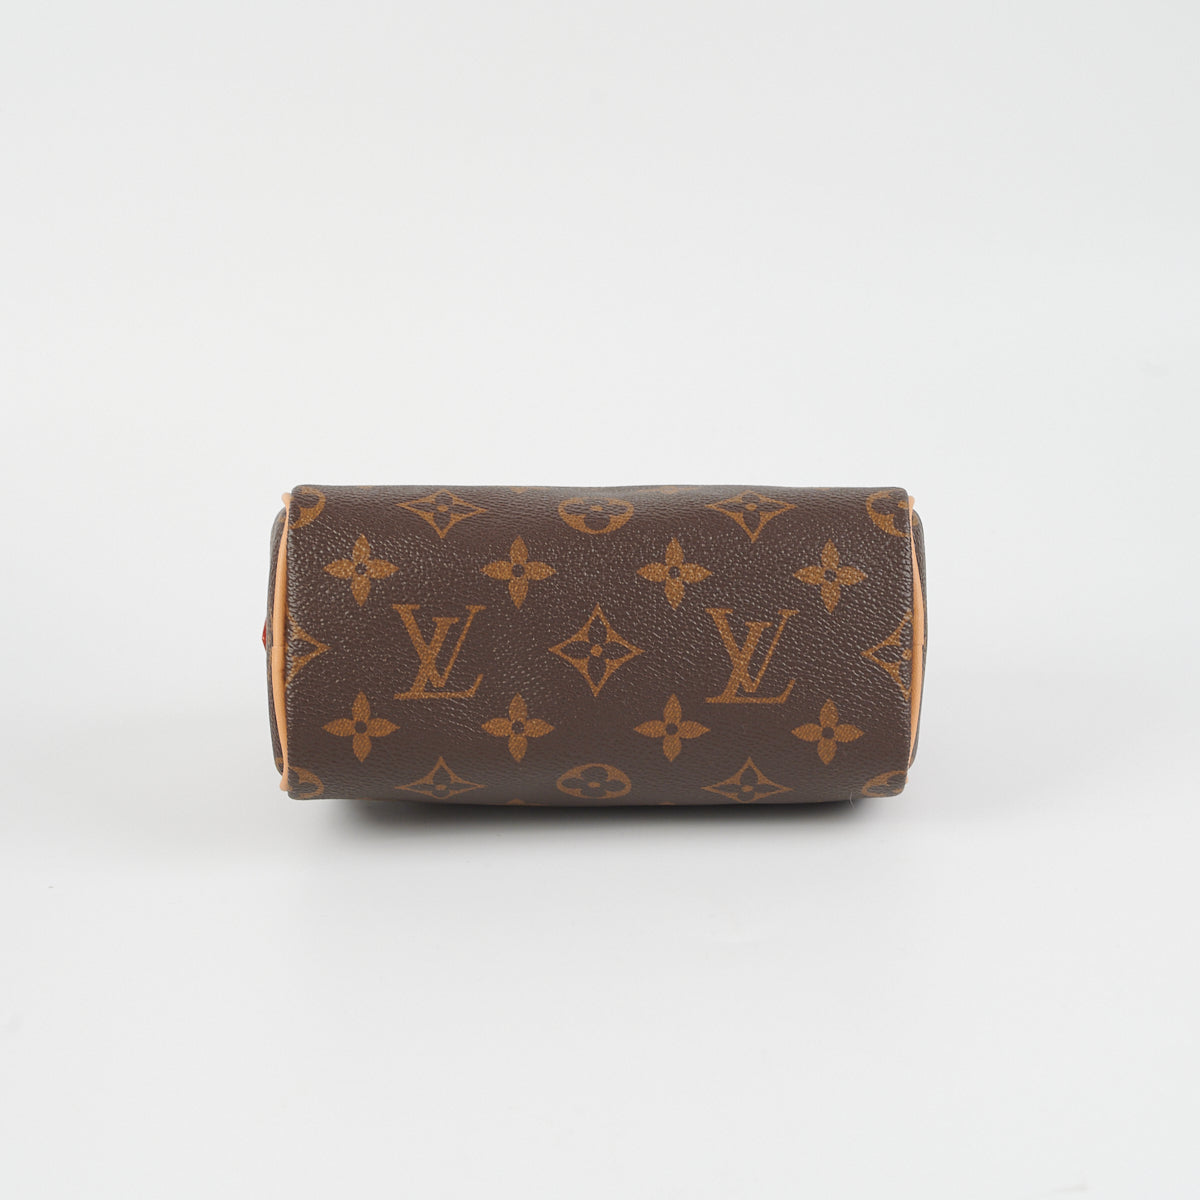 Louis Vuitton Nano Speedy Monogram (New style) - THE PURSE AFFAIR